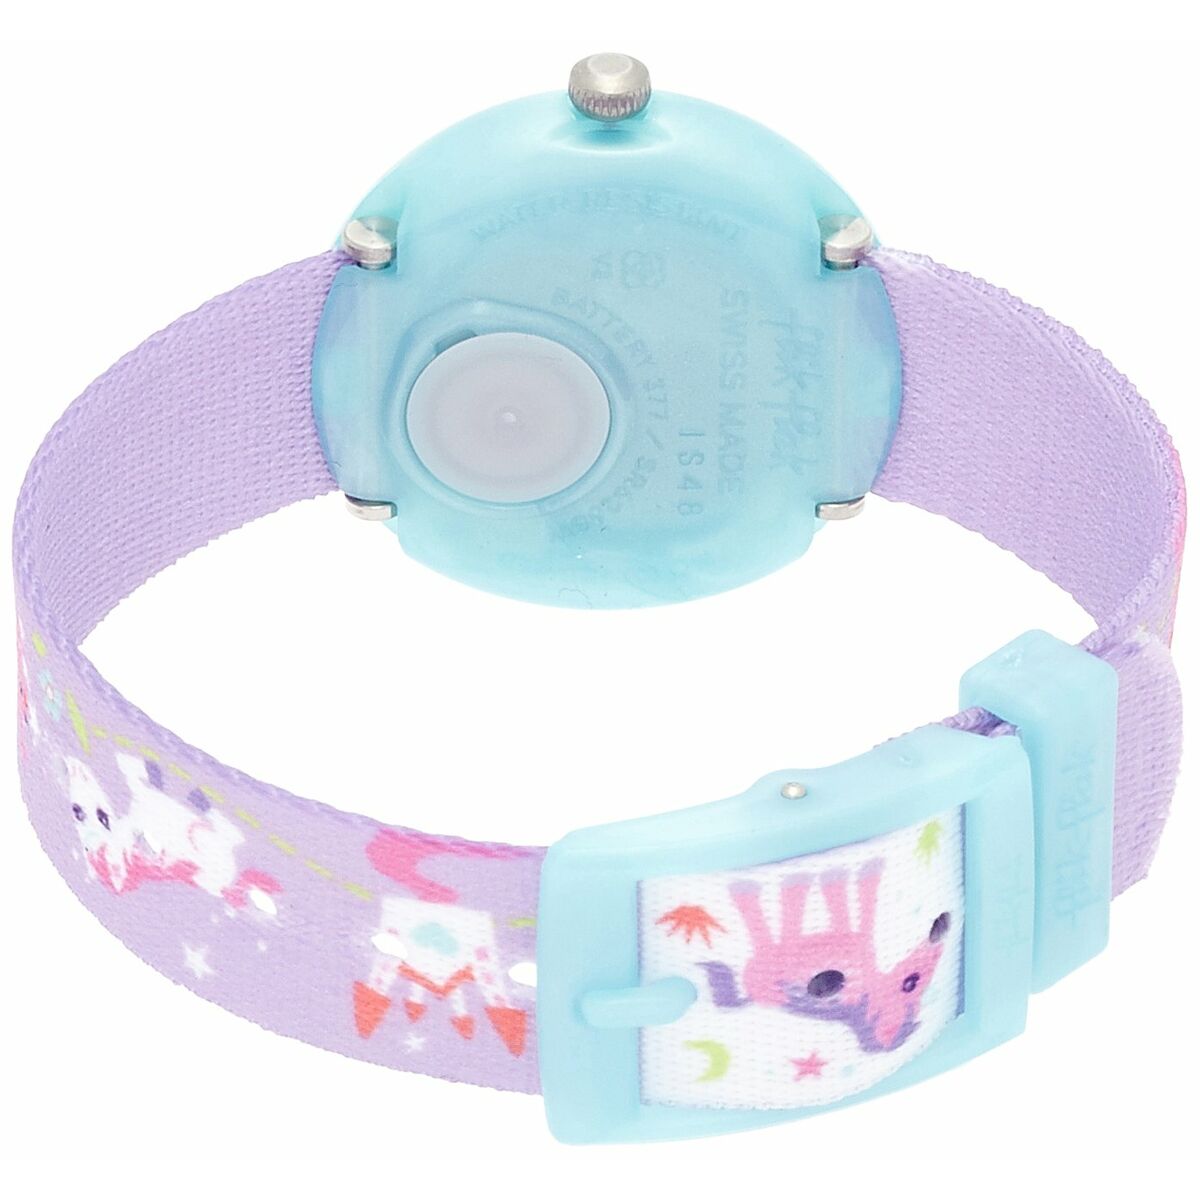 Infant's Watch Flik Flak Fbnp033